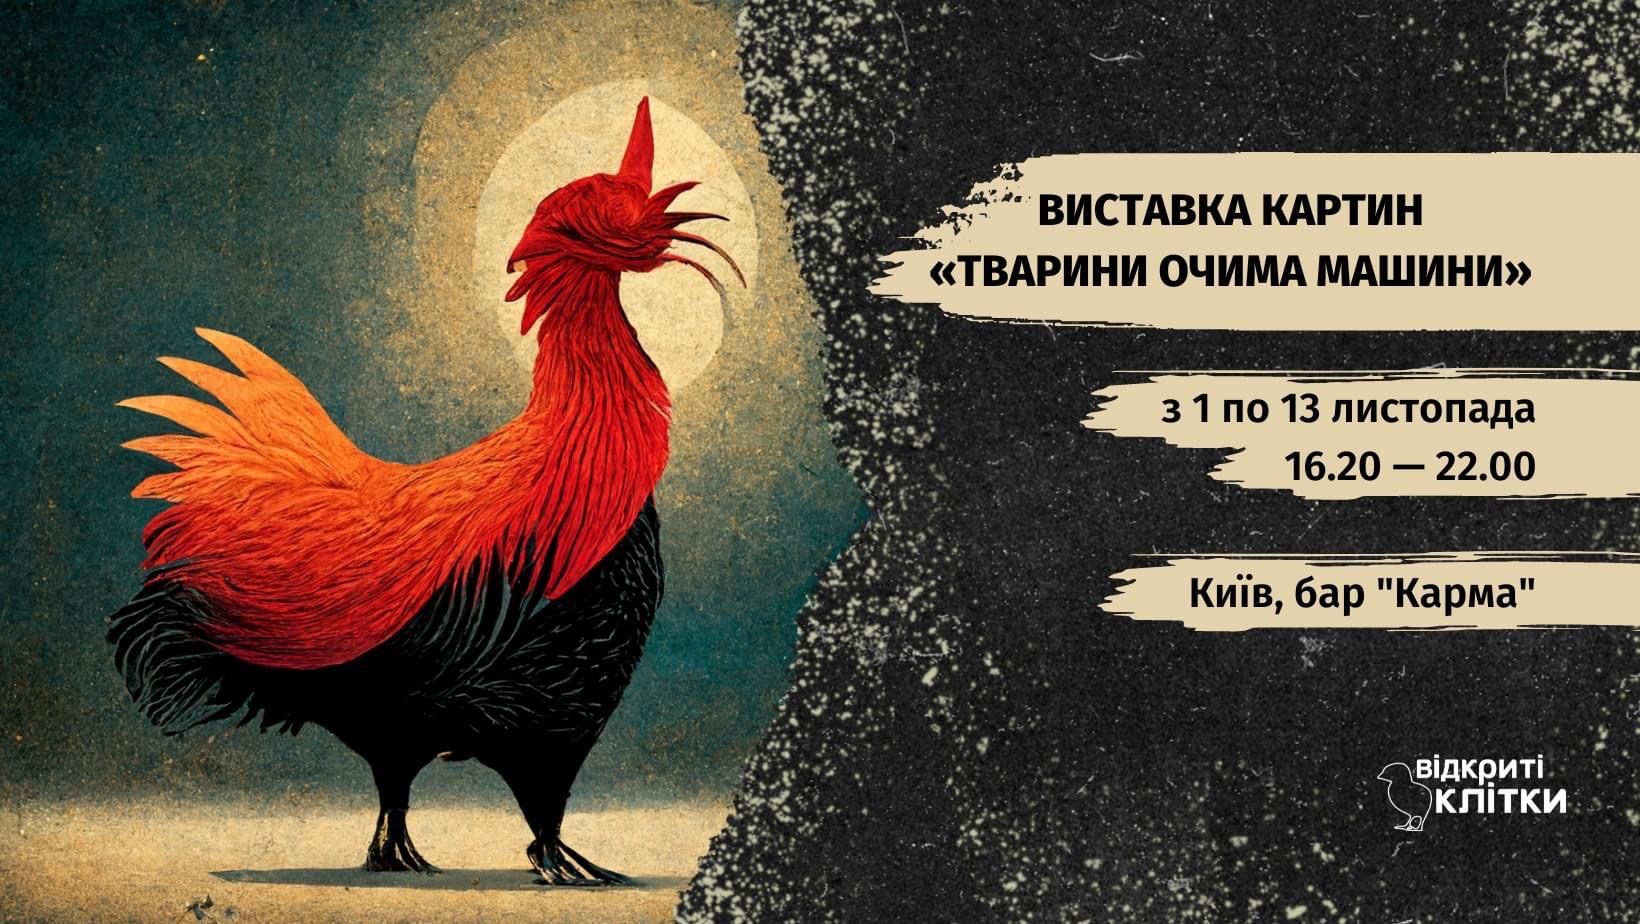 10 лучших выставок ноября в Киеве фото 2